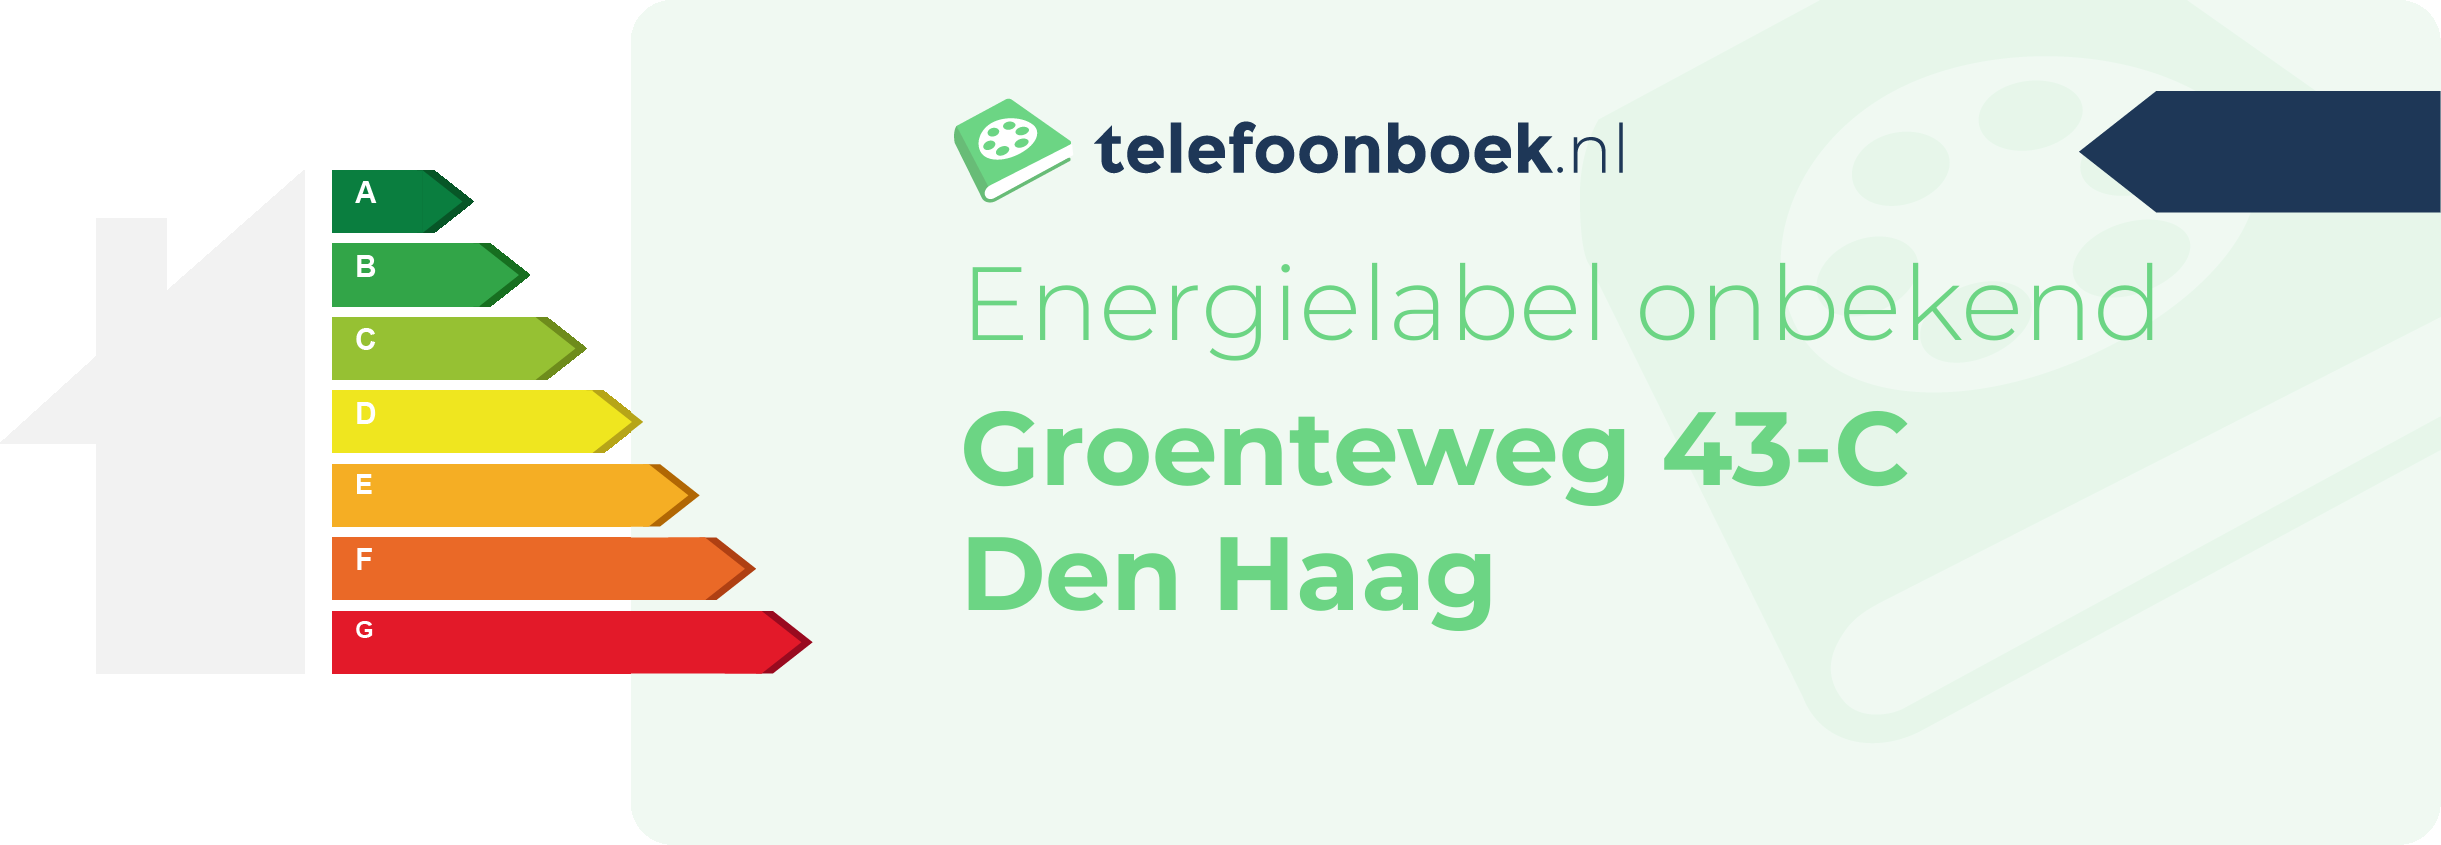 Energielabel Groenteweg 43-C Den Haag